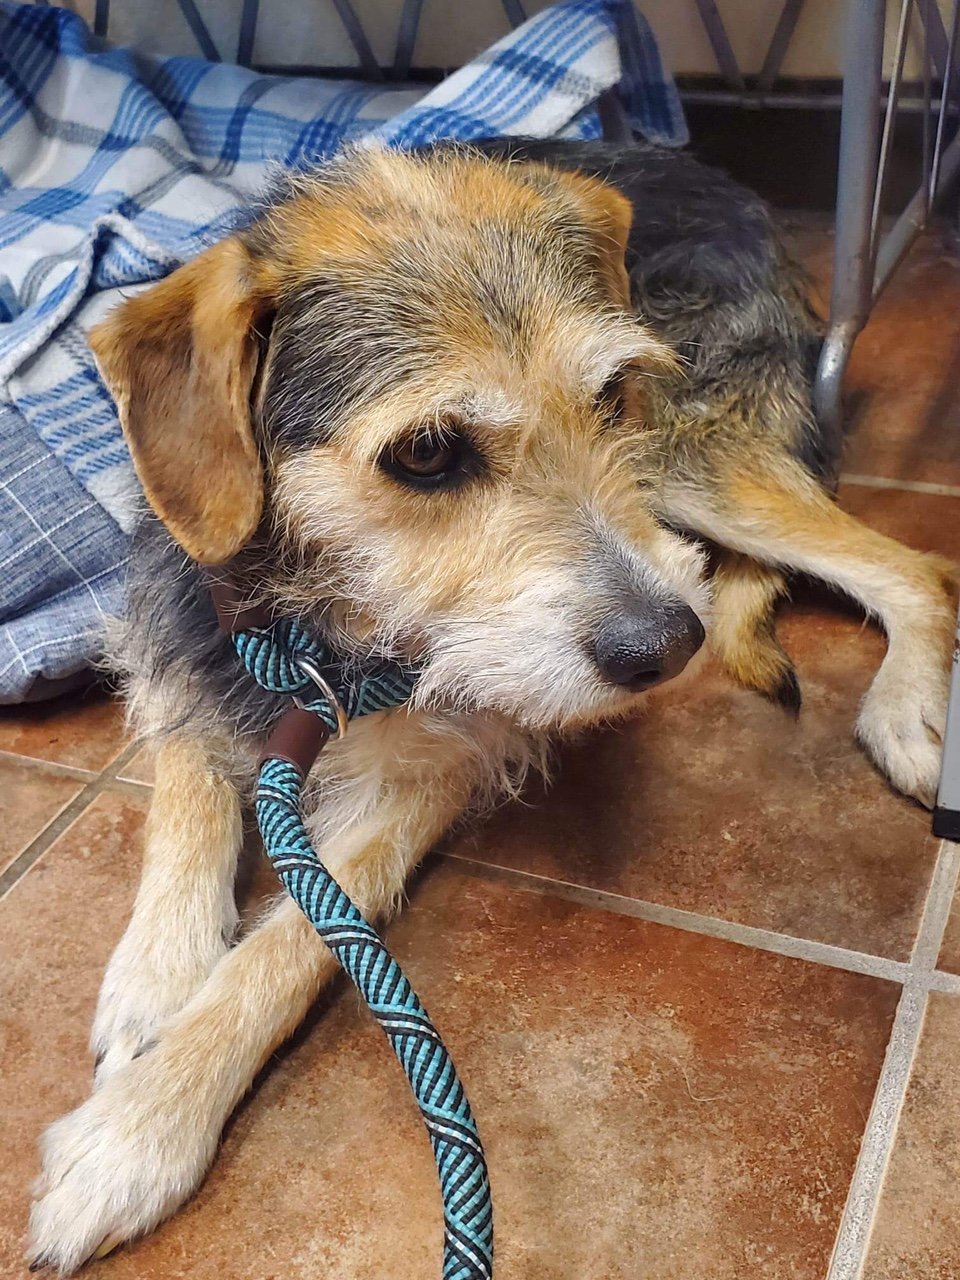 adoptable Dog in Amarillo, TX named Ranger